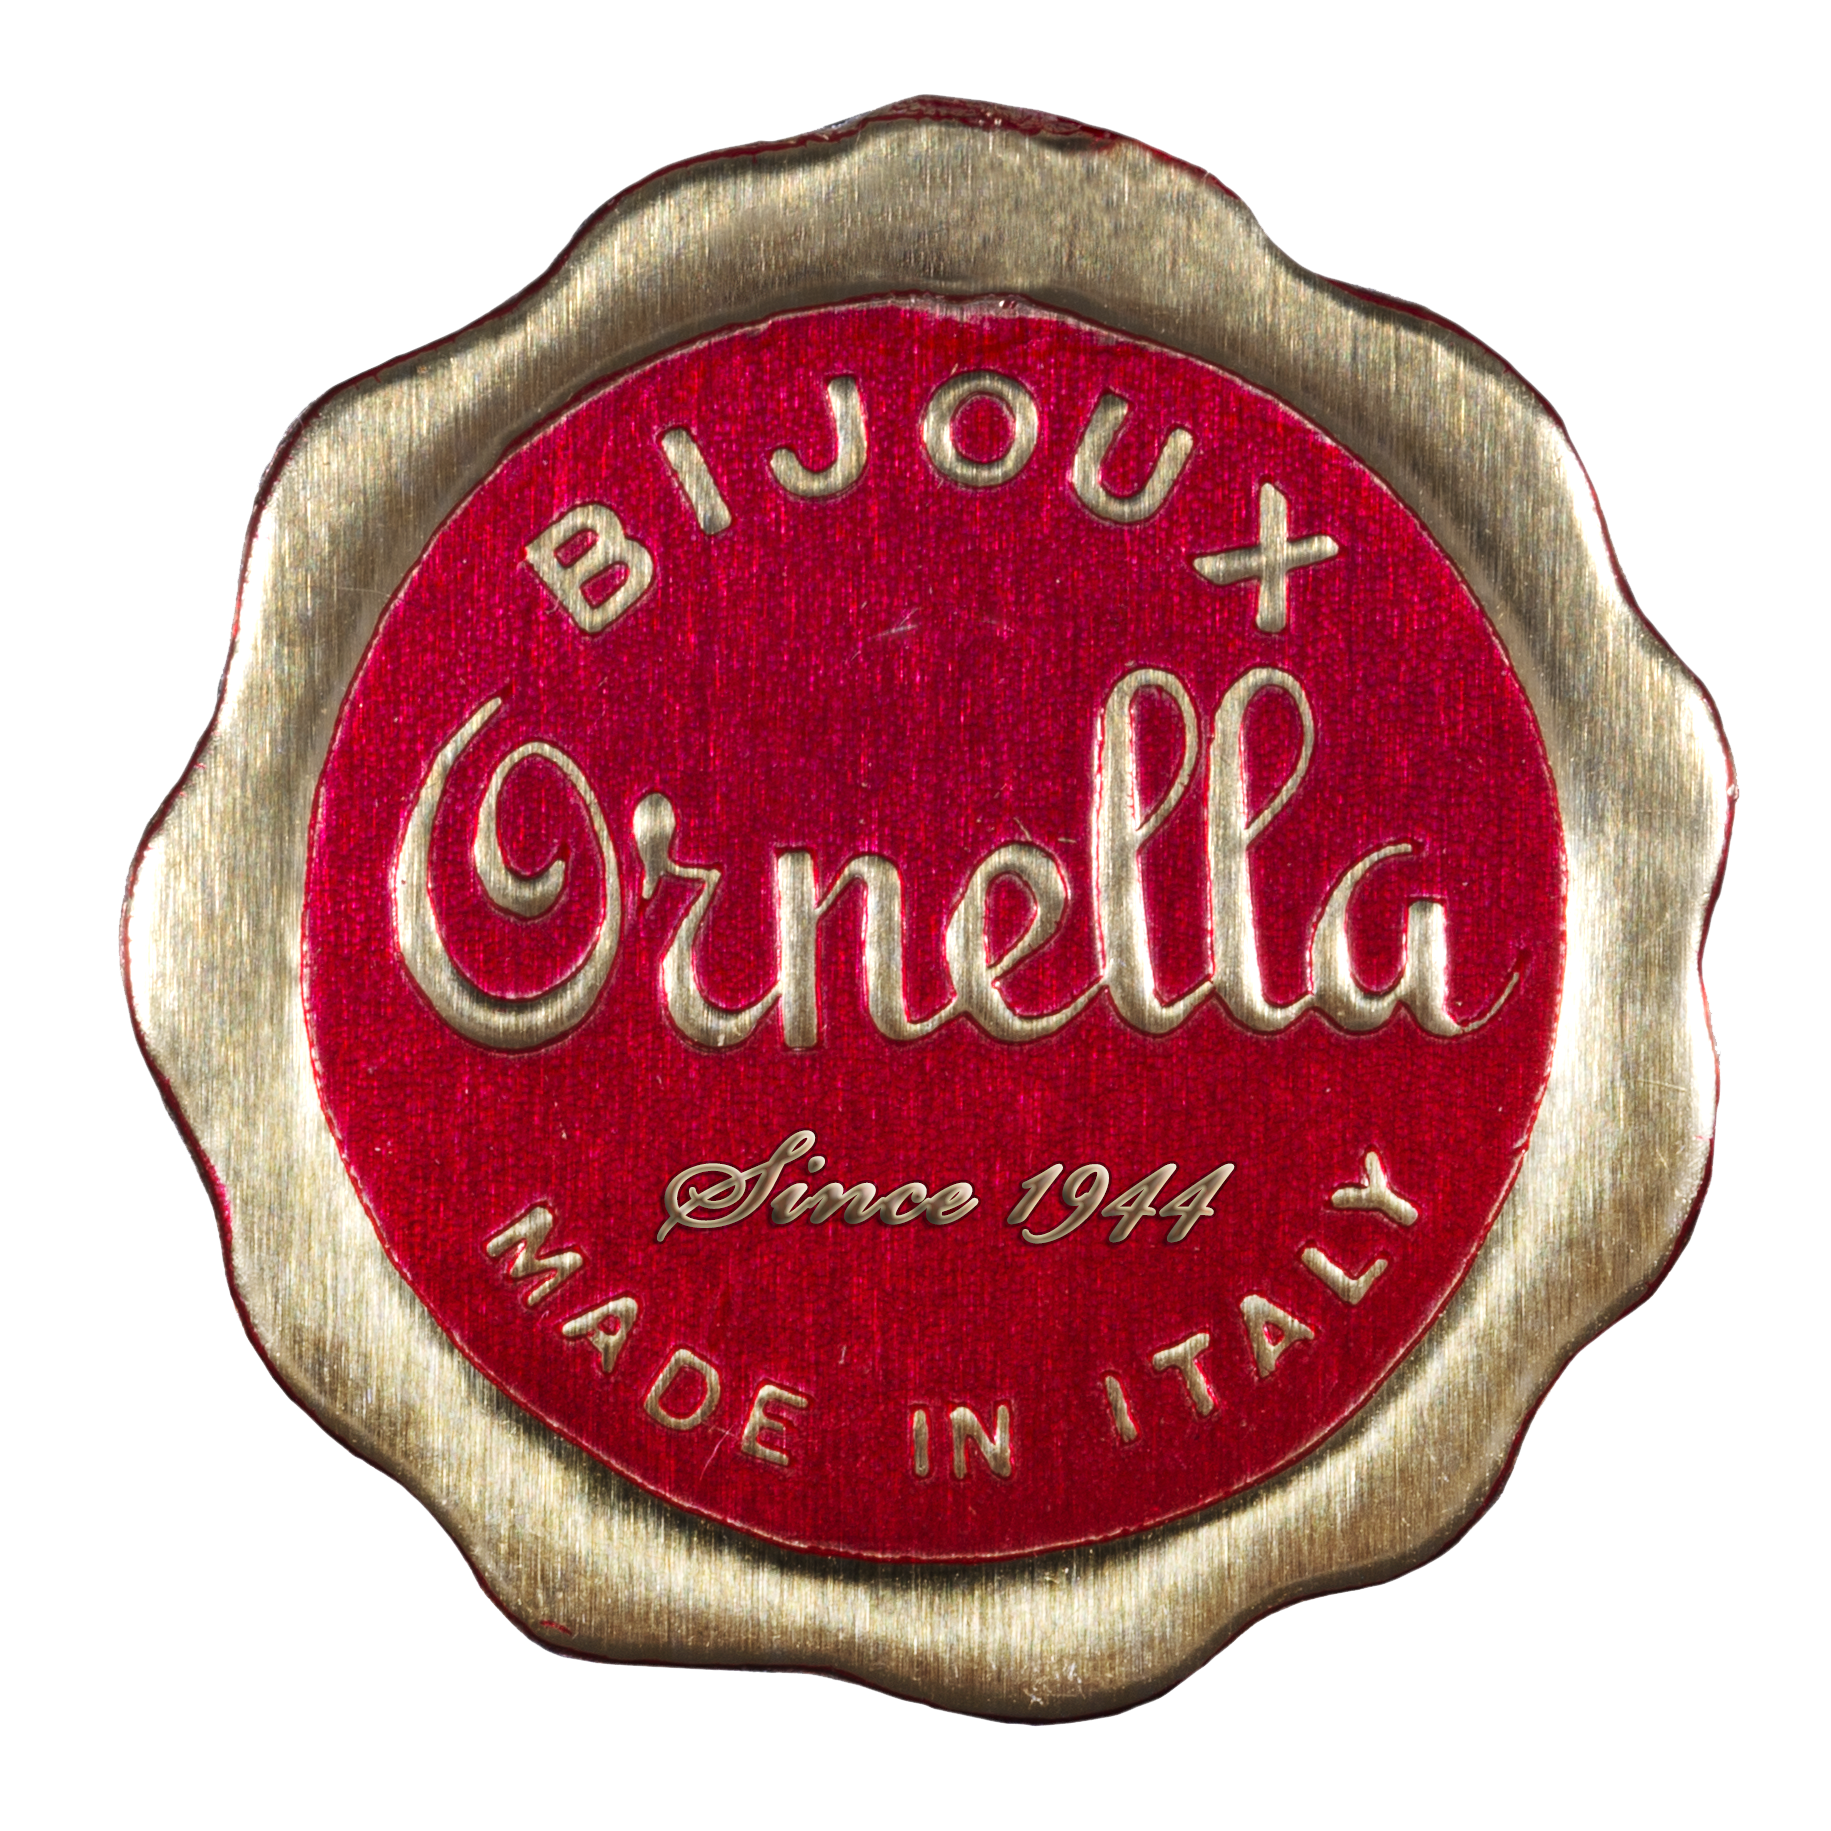 ornella-bijoux-bigiottieri-milano-profile